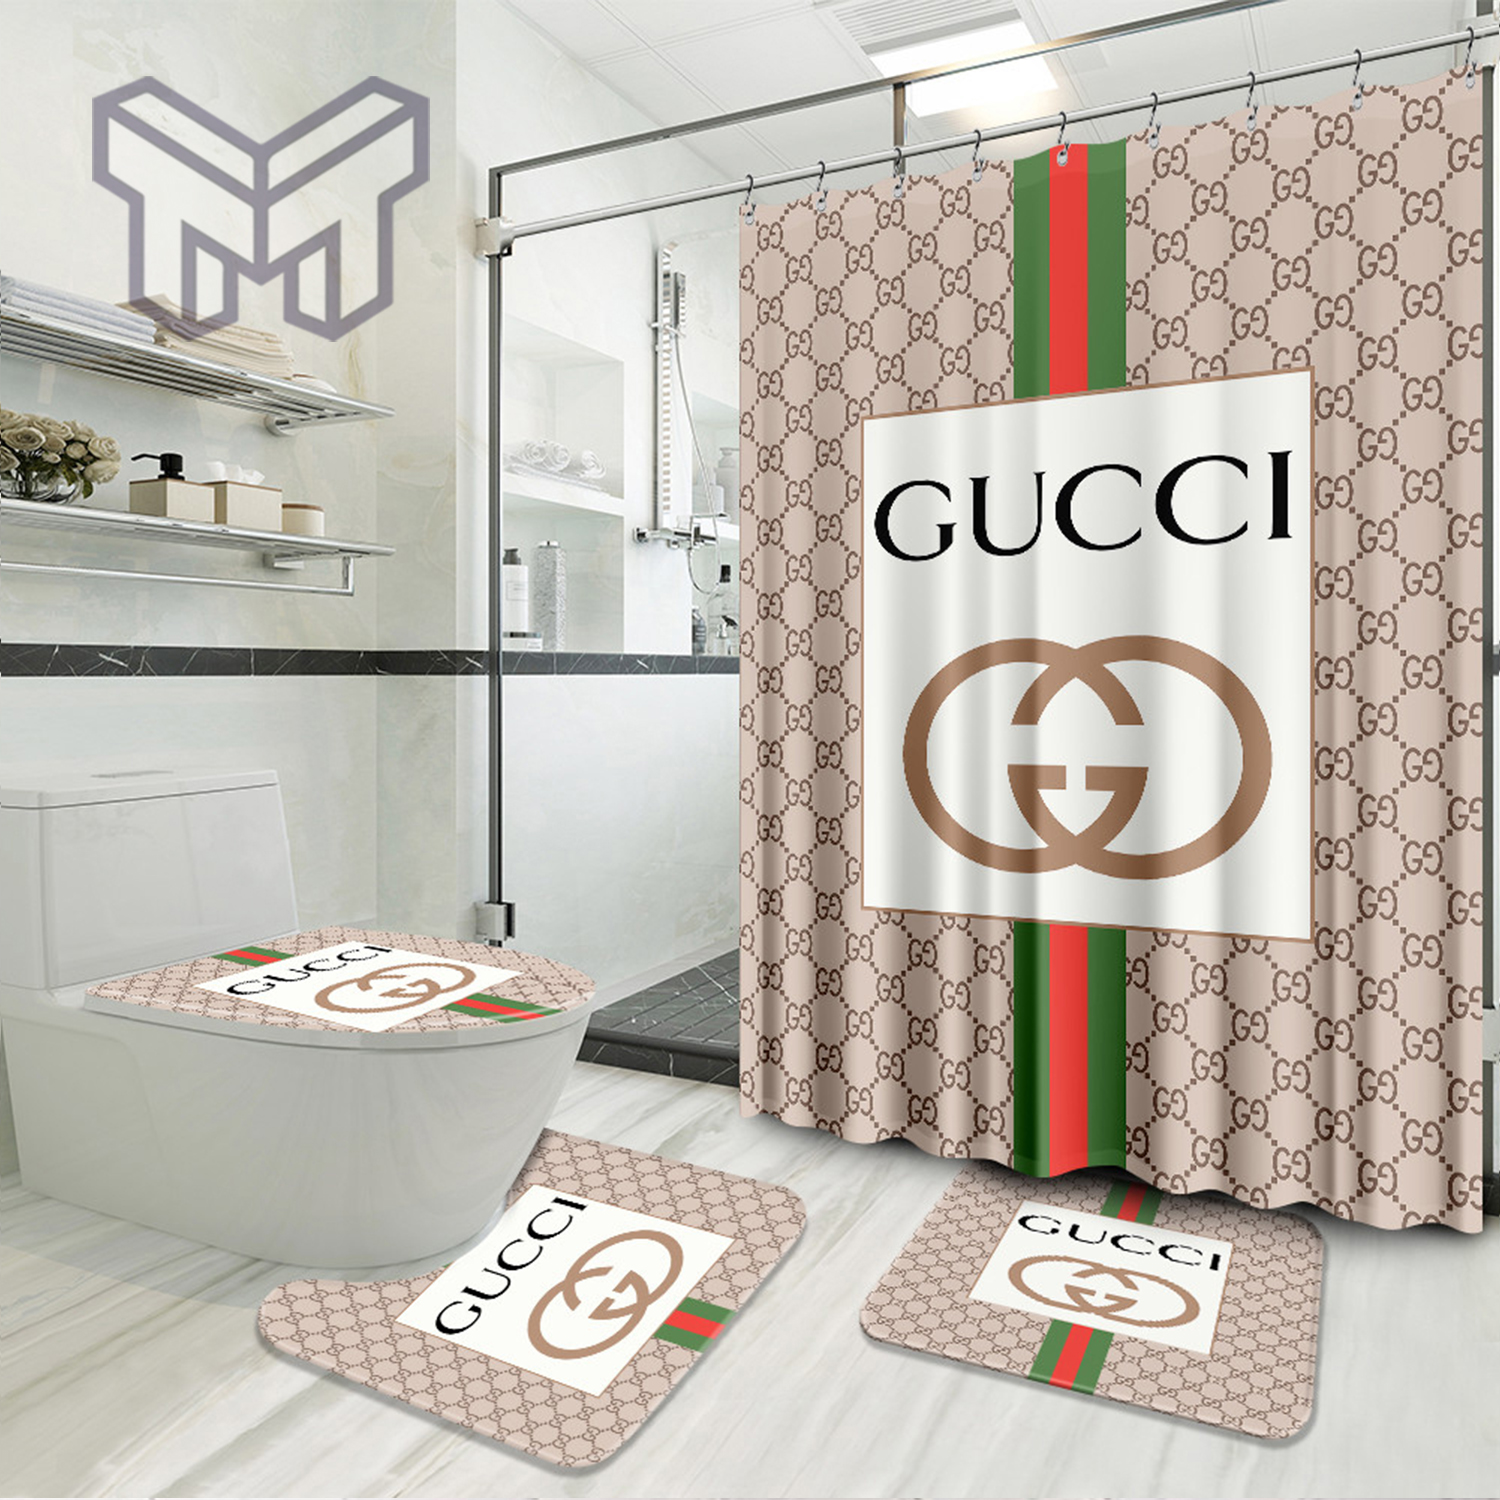 Gucci Bathroom Sets